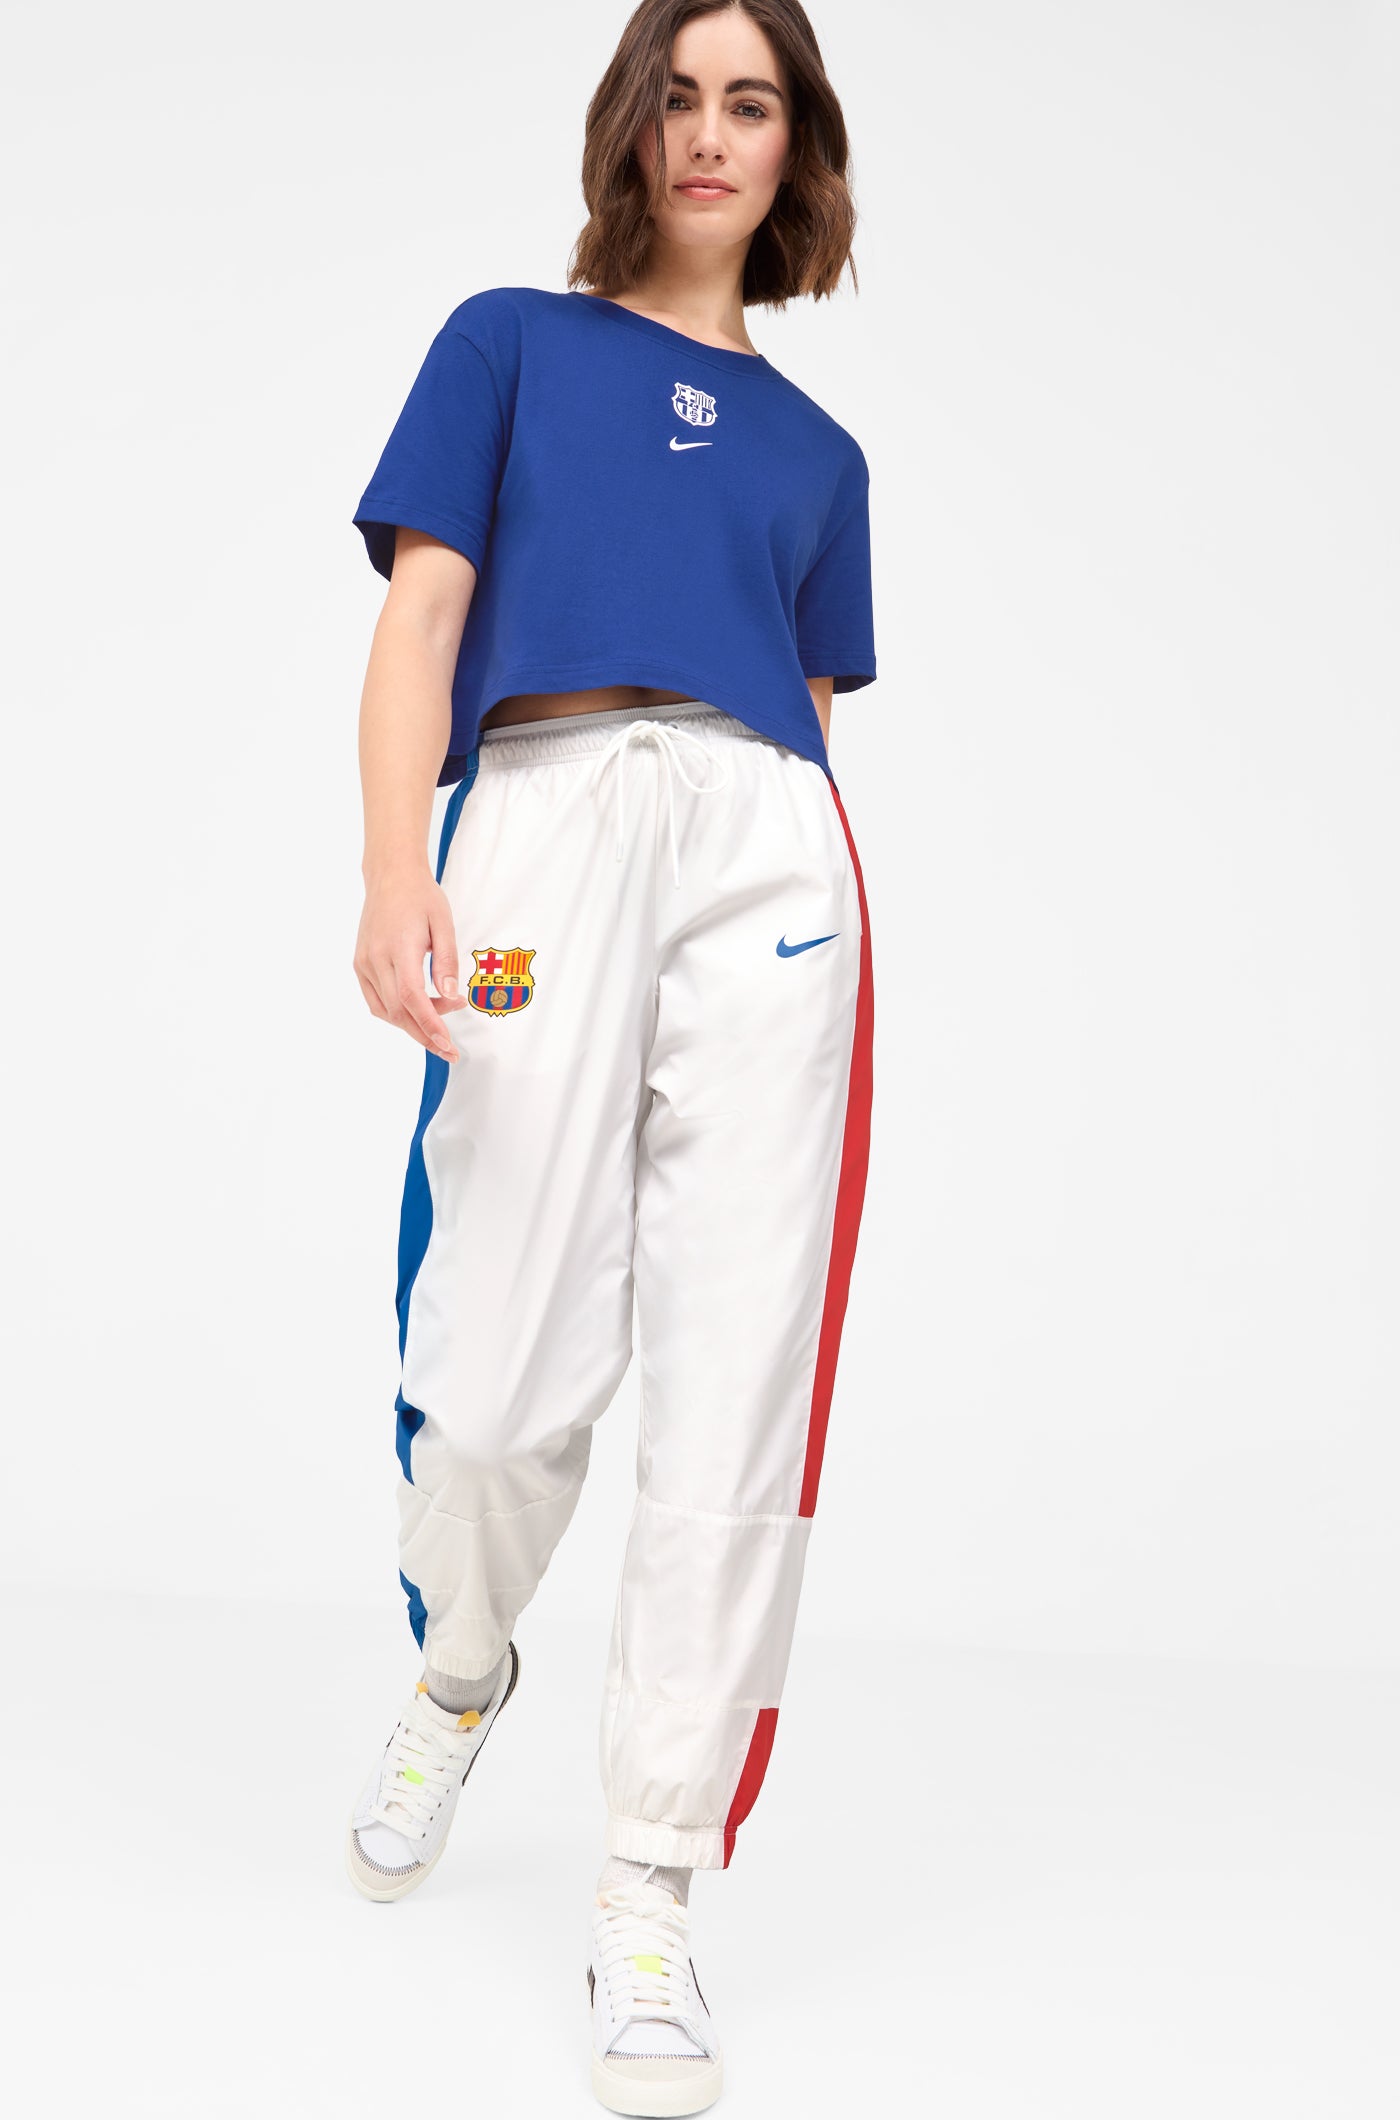 Pantalón blanco Barça Nike - Mujer